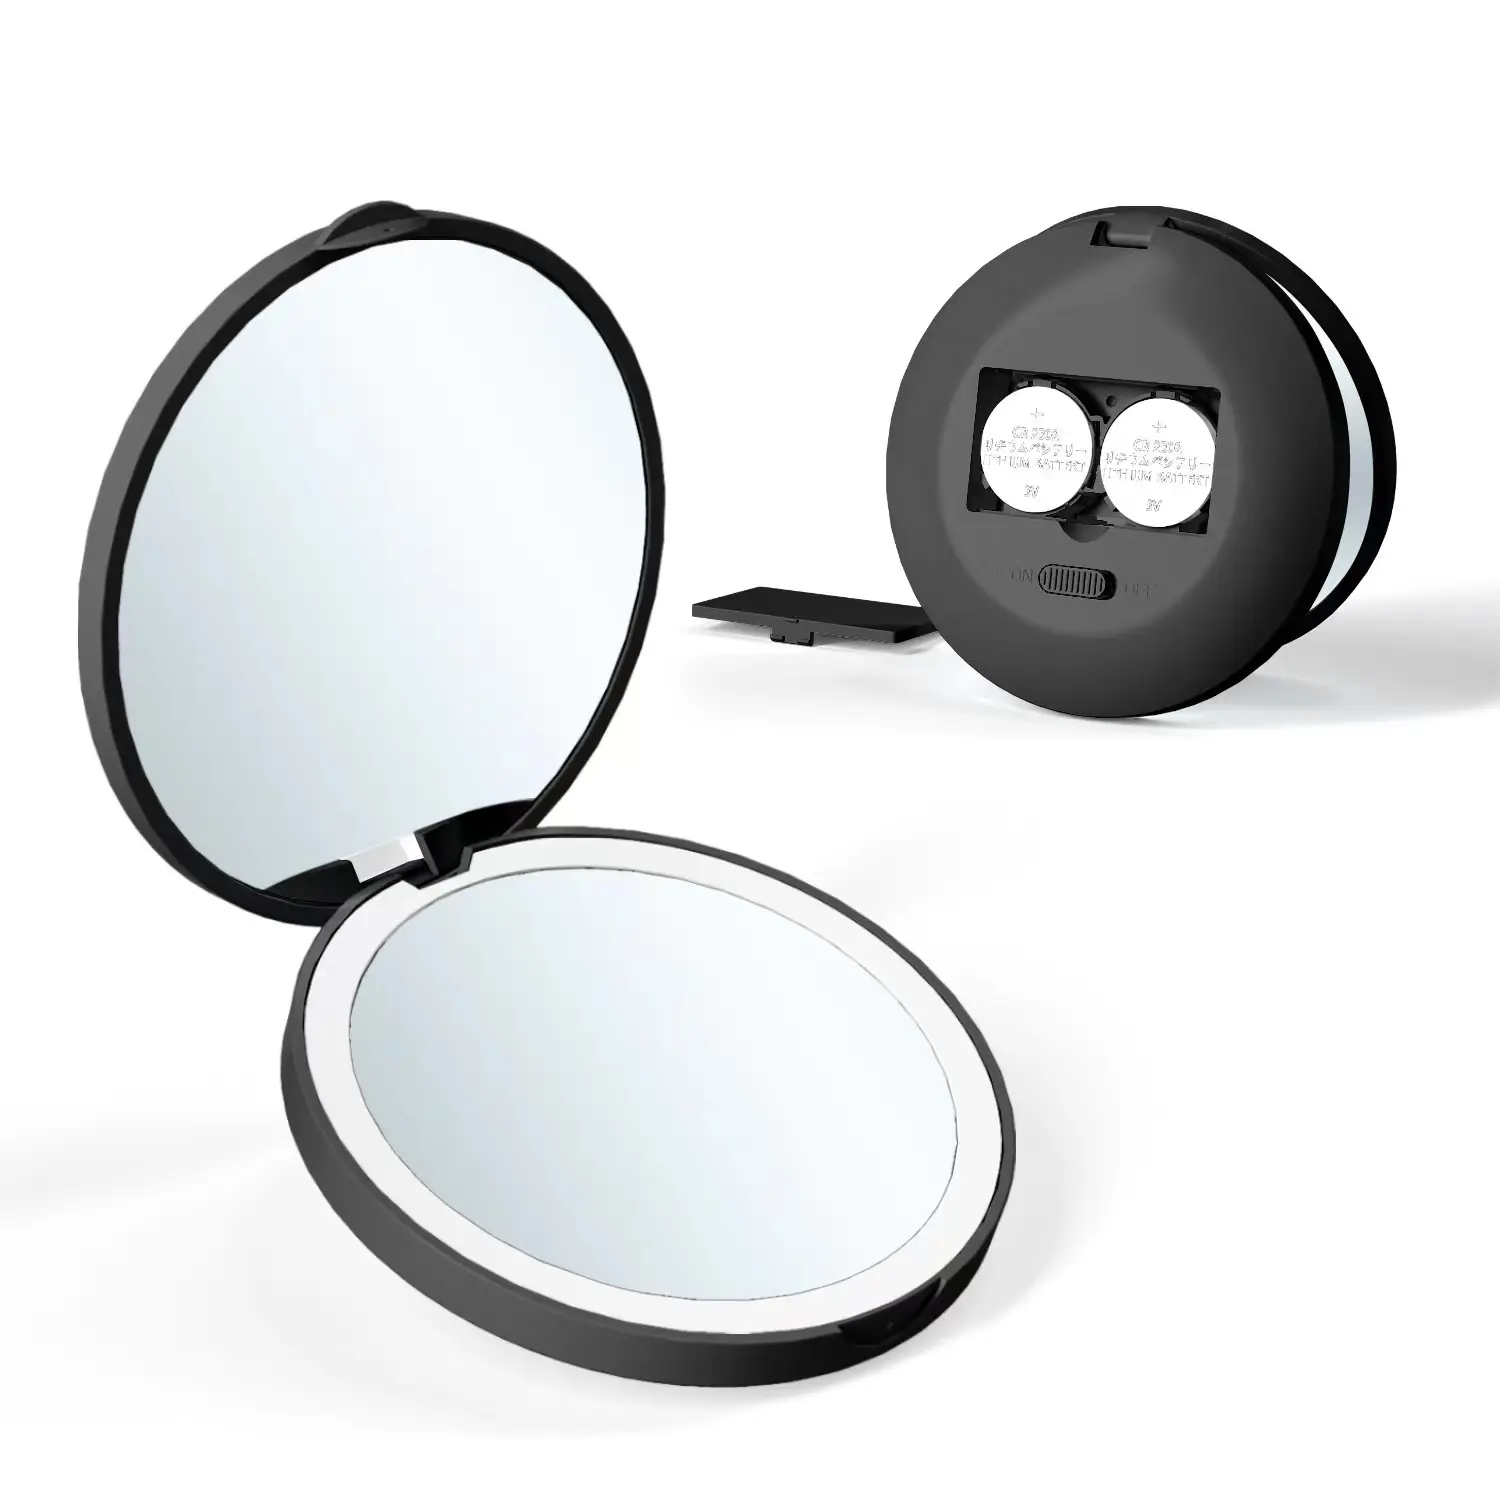 Perbesaran Dompet lampu LED, perbesaran lucu lampu LED saku dompet genggam portabel lipat cermin rias Mini kecil